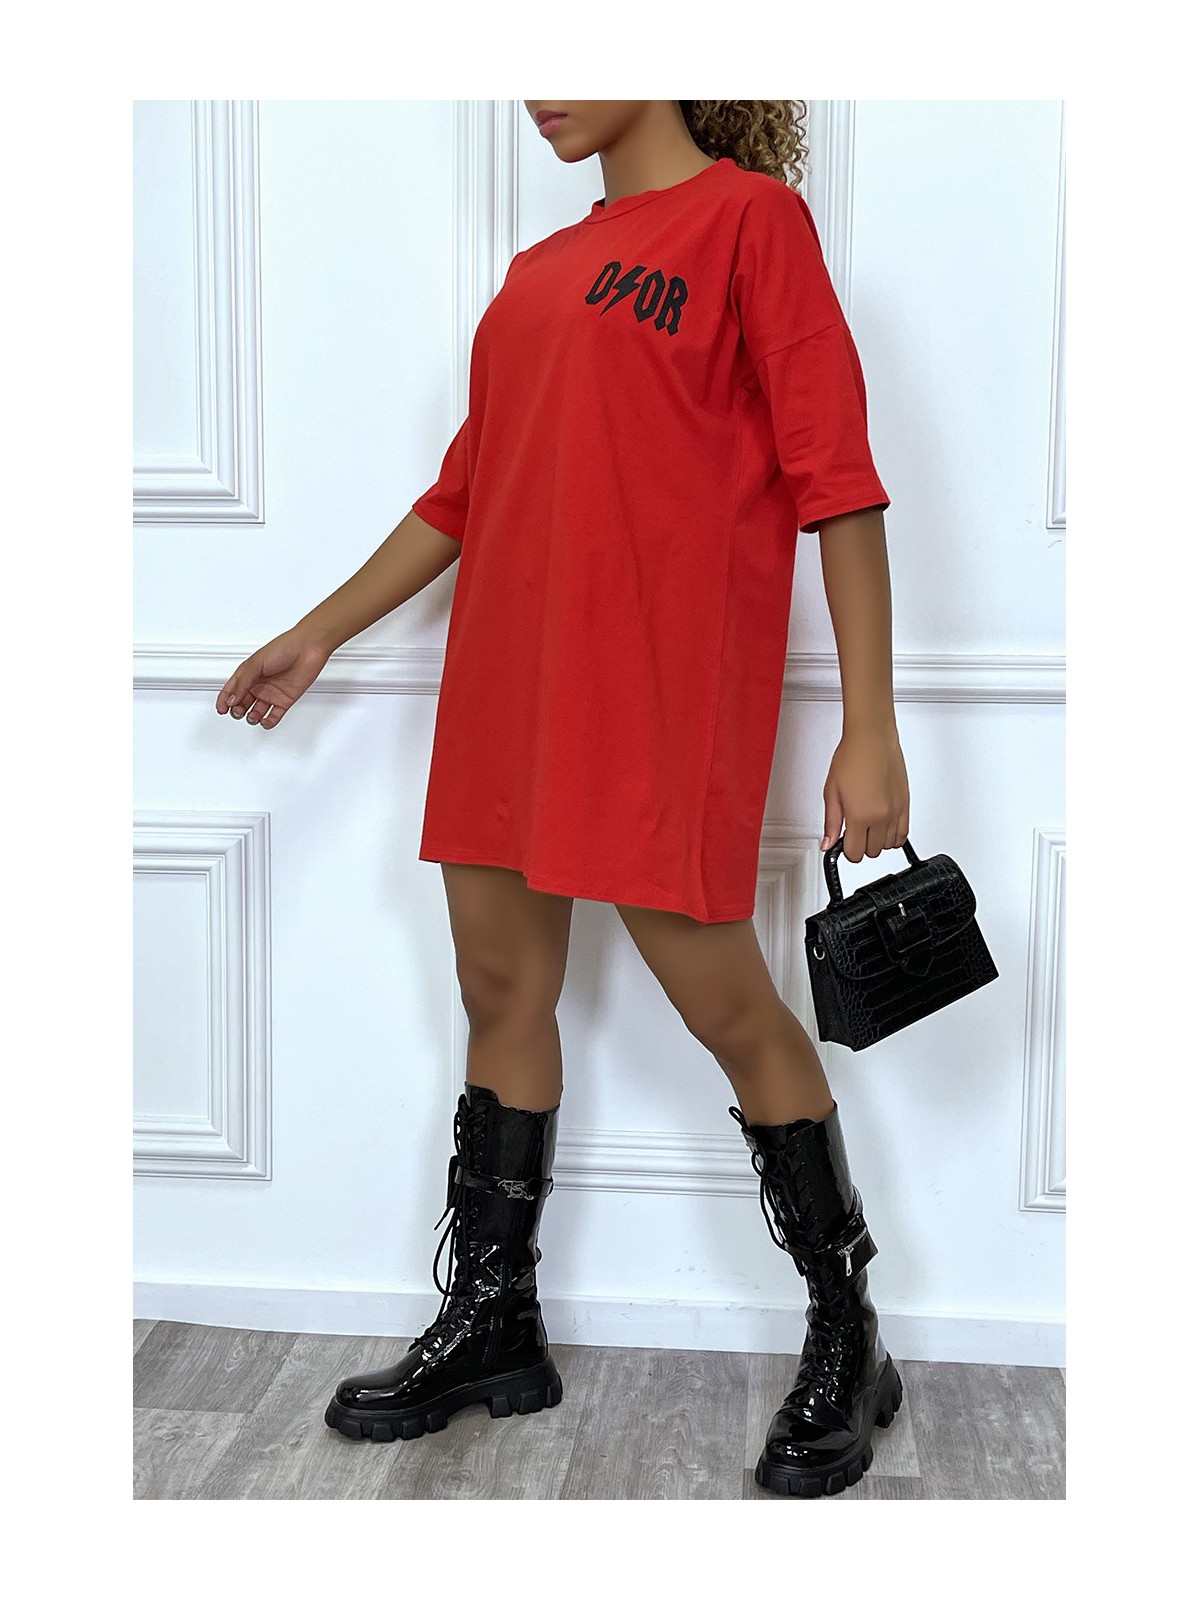 Tee-shirt oversize rouge tendance, écriture "D/or", manche mi-longue - 3